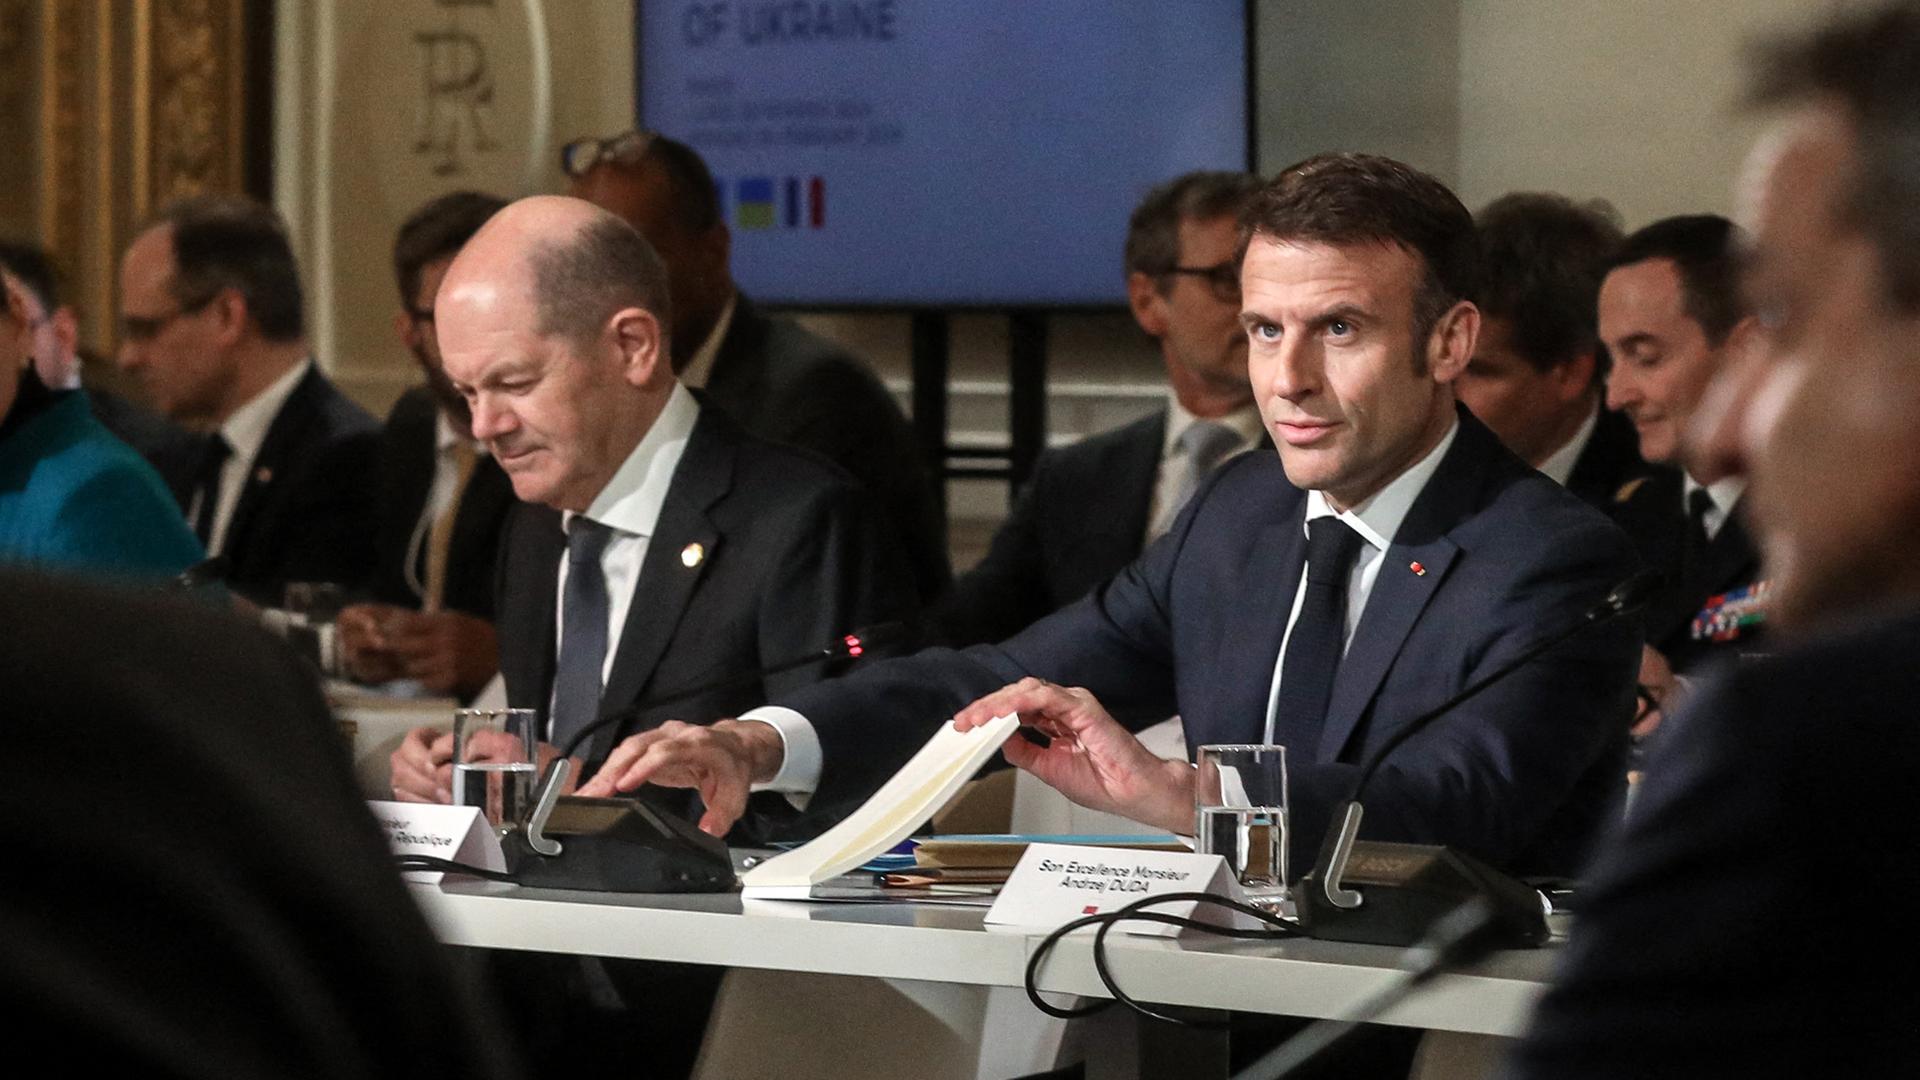 Frankreichs Präsident Emmanuel Macron (r.) und Bundeskanzler Olaf Scholz sitzen nebeneinander an einem Konferenztisch. Daneben und im Hintergrund weitere Personen.